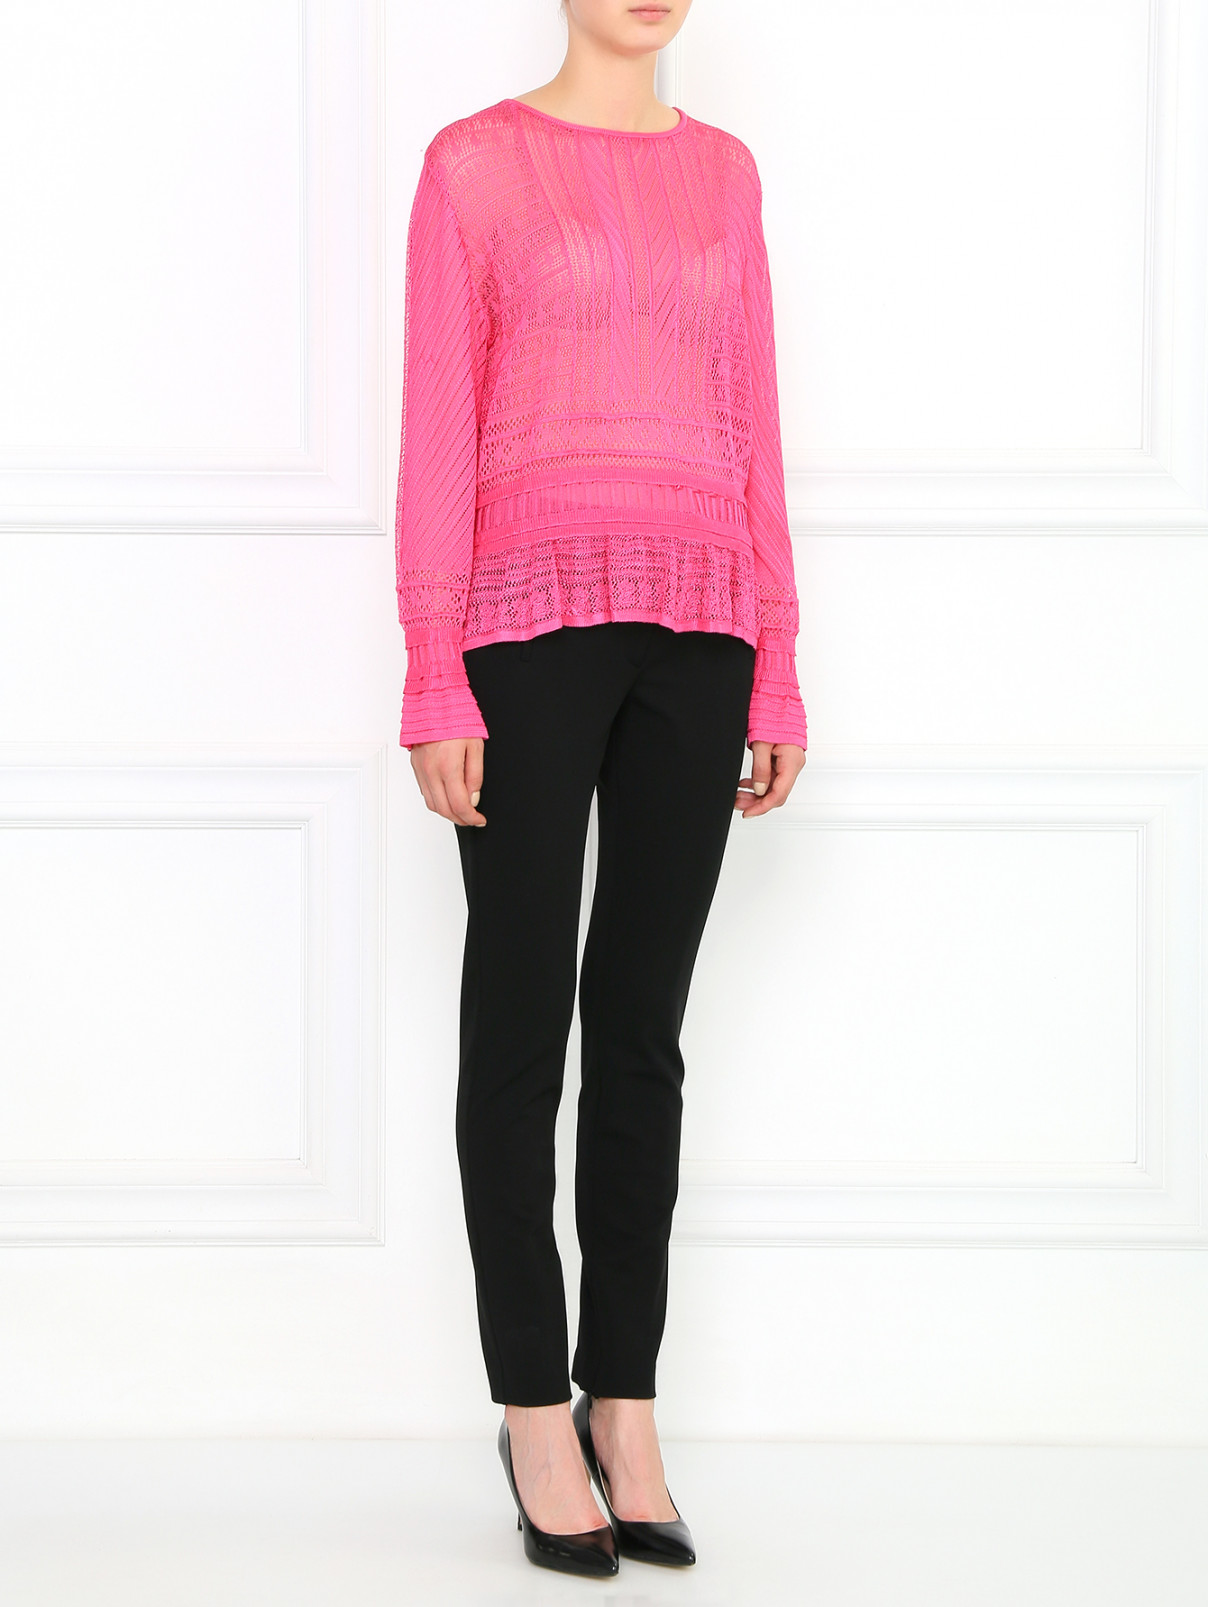 Кружевная блуза на кулиске Lil Paris  –  Модель Общий вид  – Цвет:  Розовый